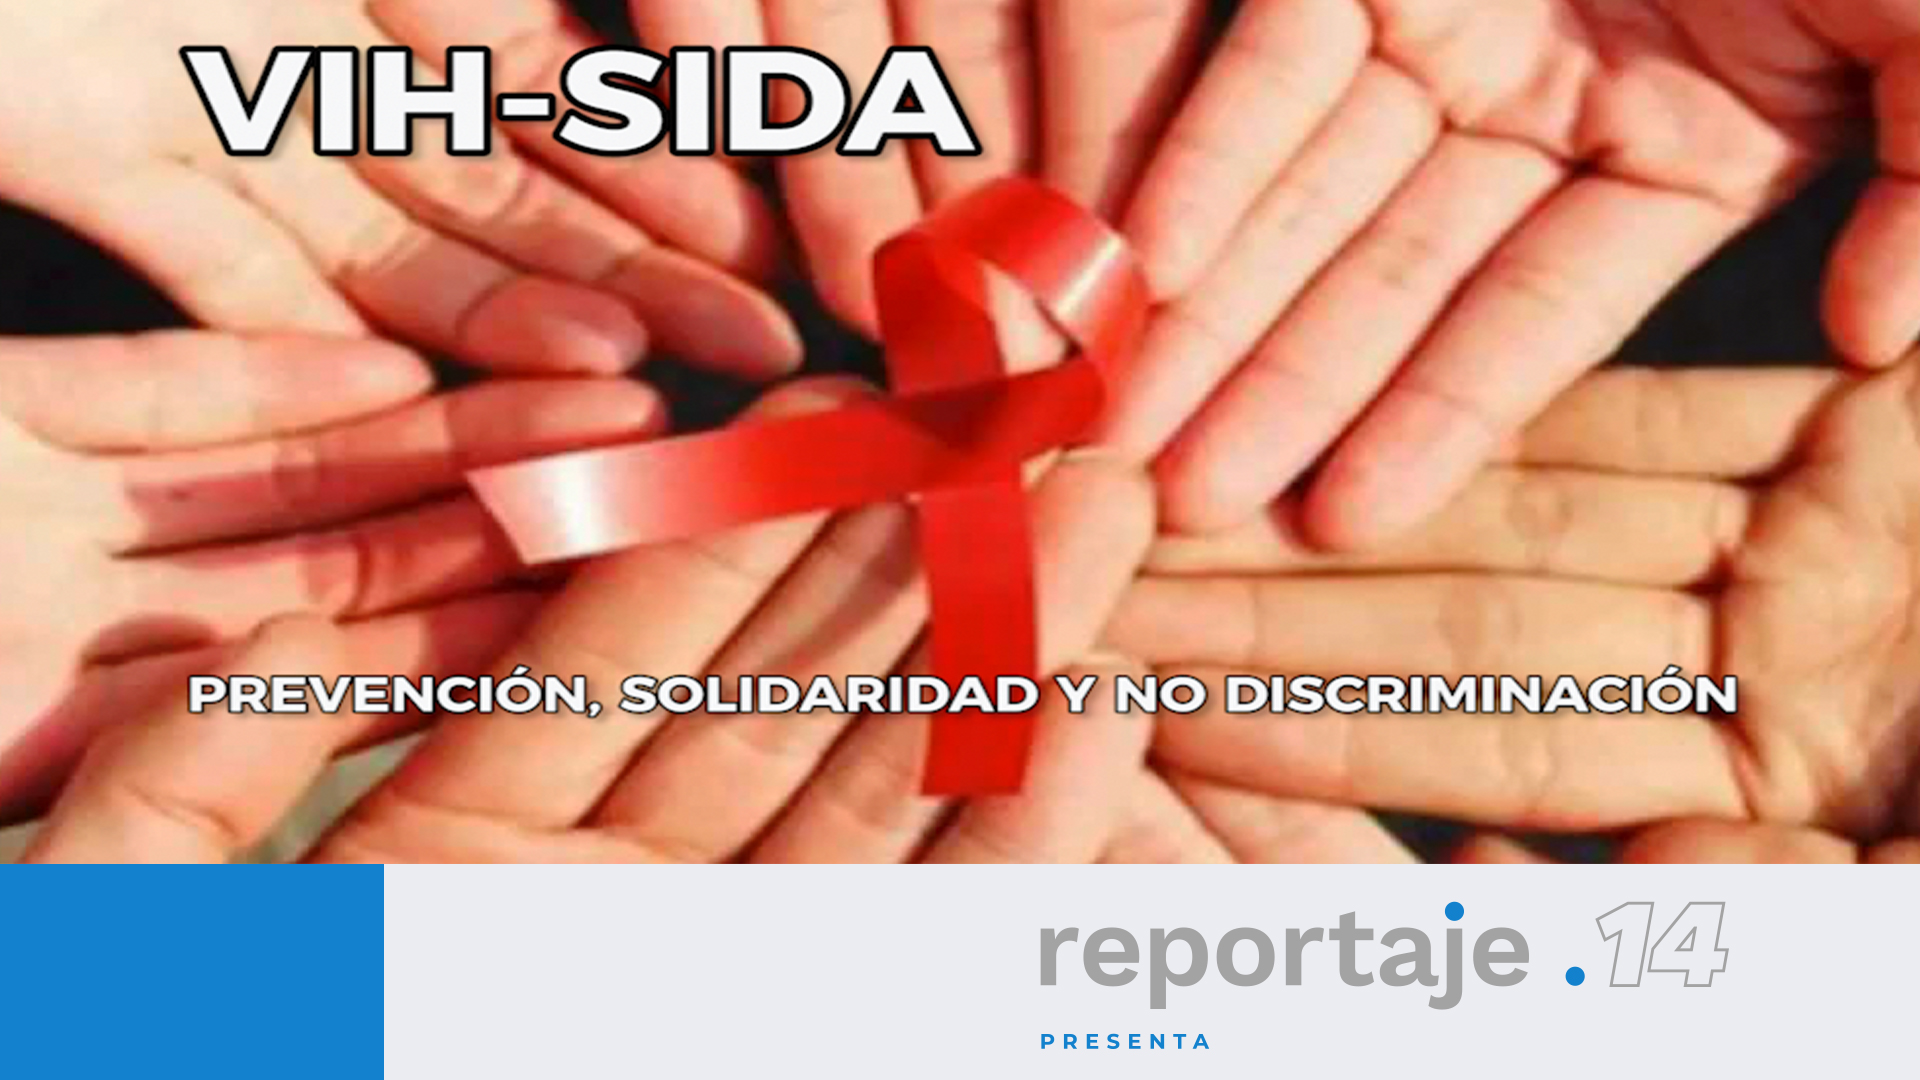 VIH-SIDA. Prevención, solidaridad y no discriminación